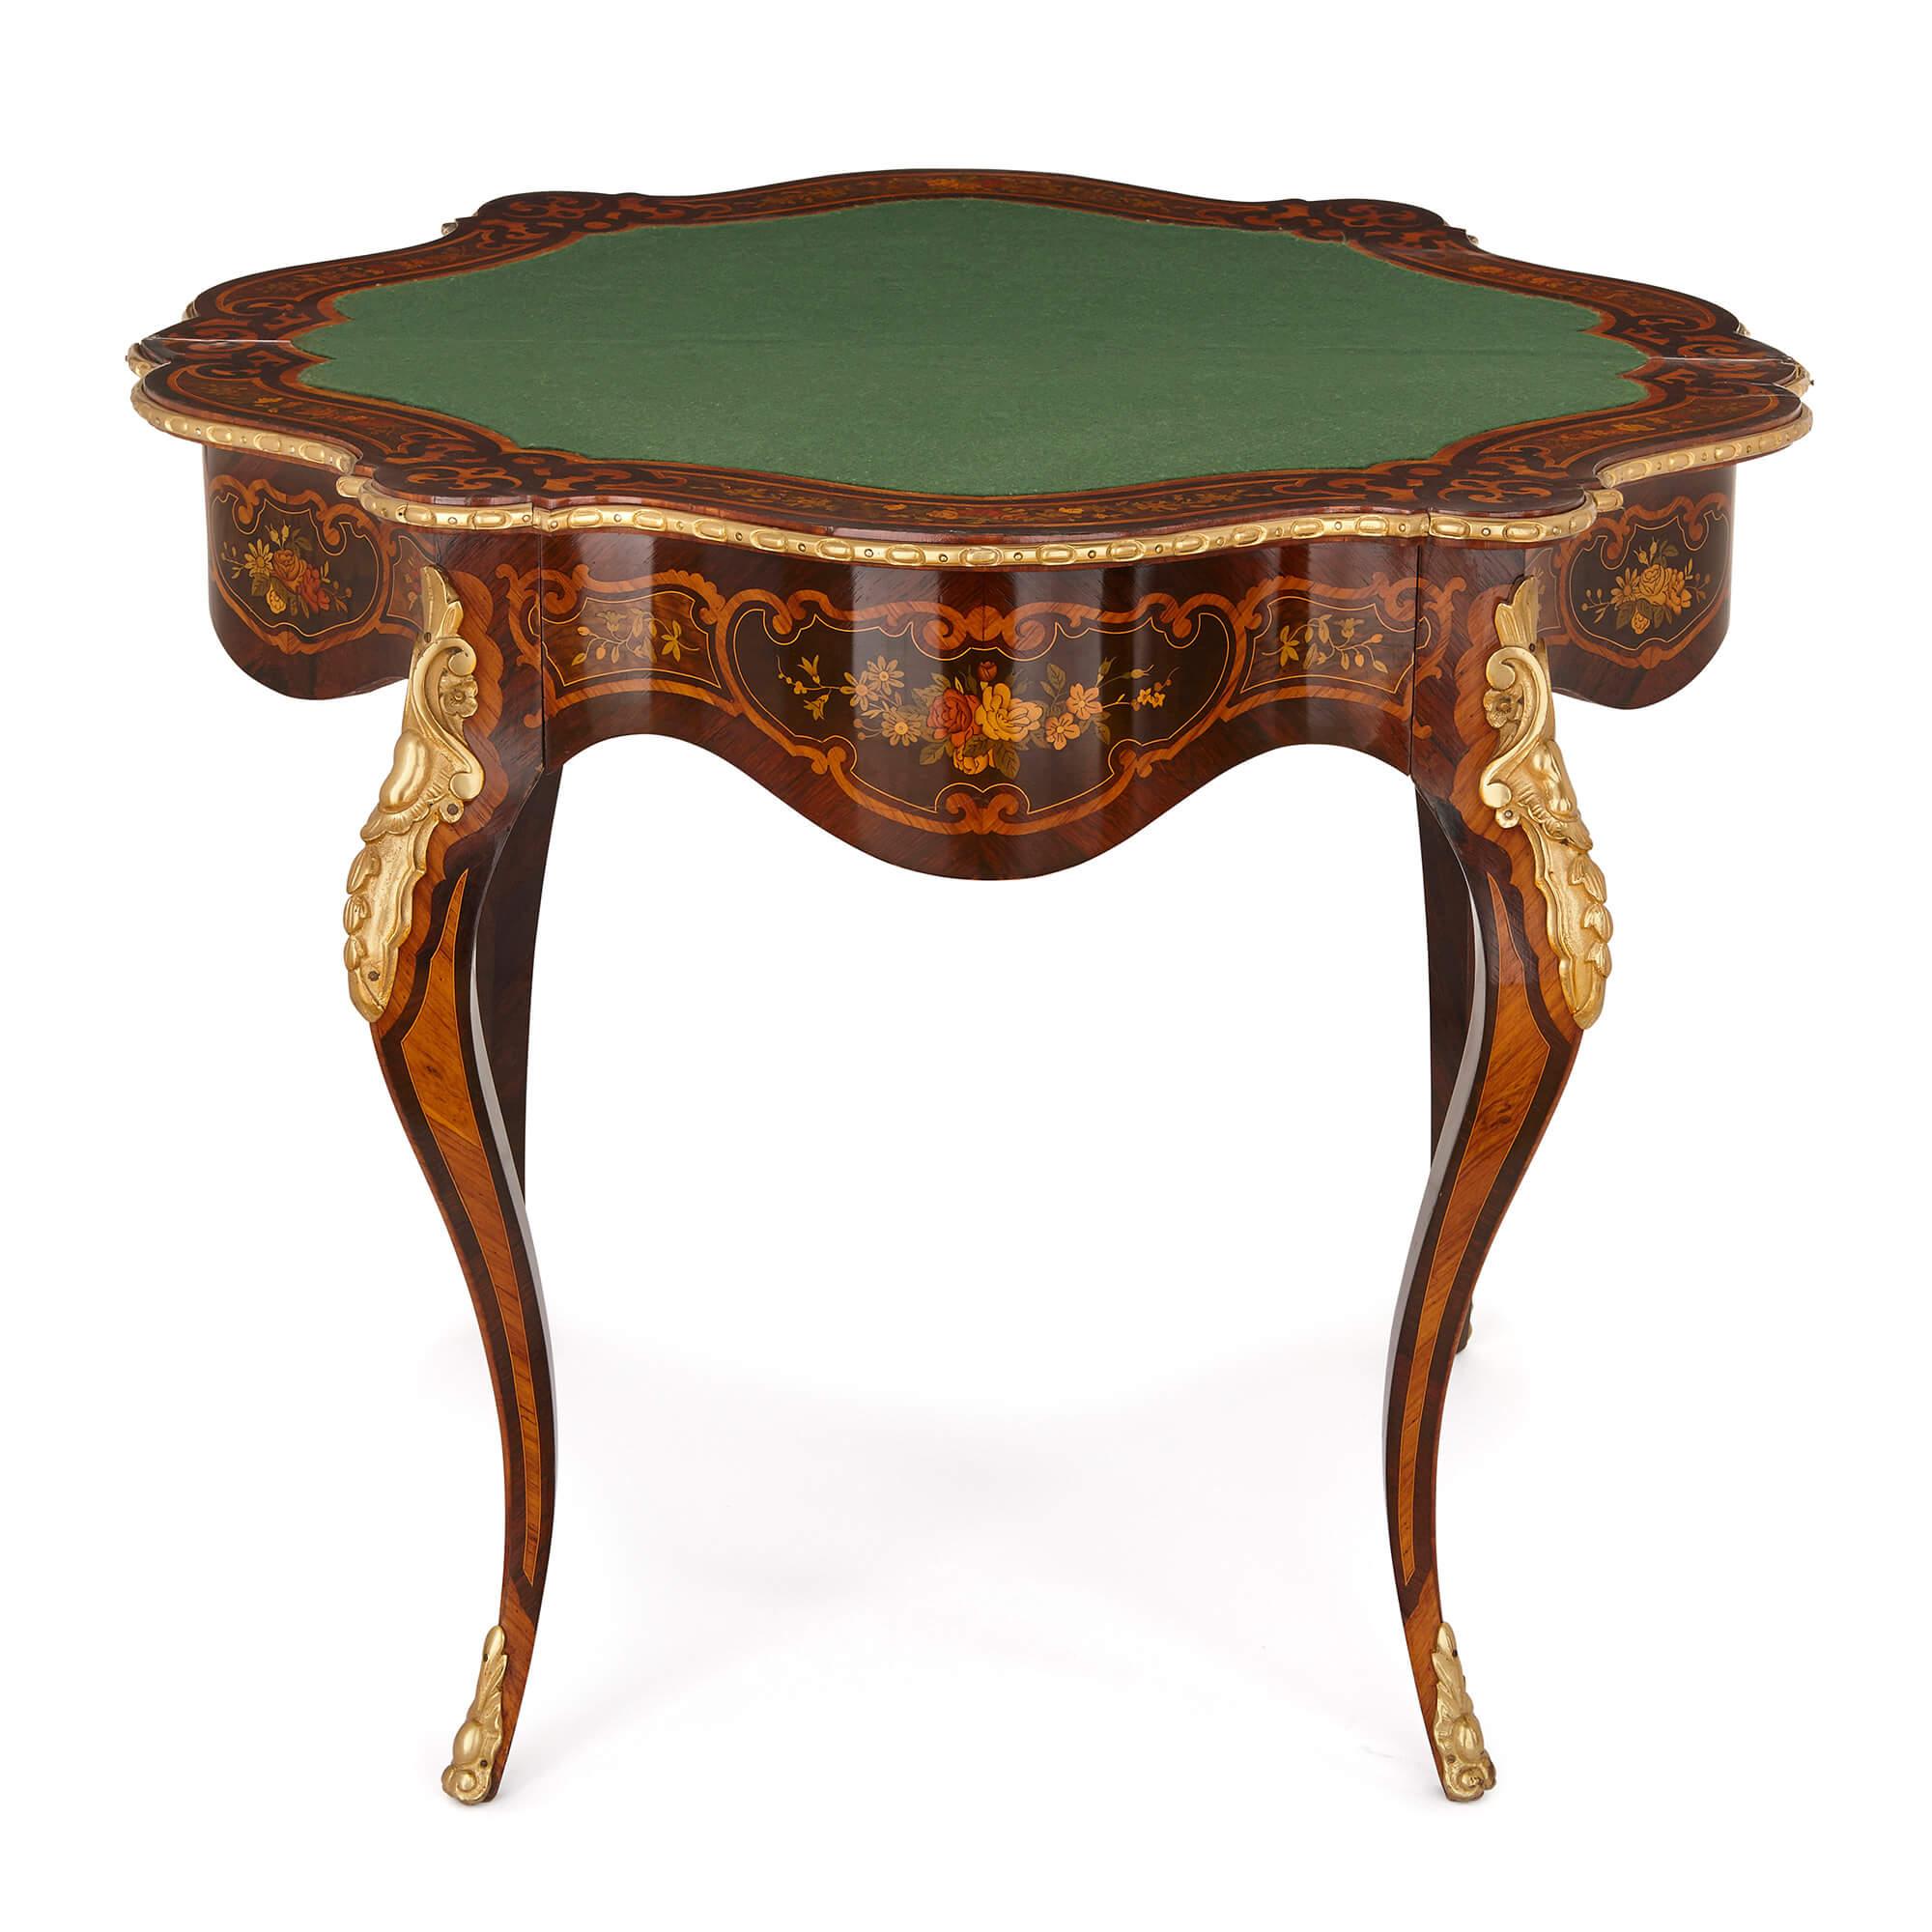 Dieser schöne antike Tisch ist im Louis XV-Stil gefertigt, der als Synonym für Anmut, Eleganz und überschwängliches Design gilt. Der aus luxuriösen Materialien gefertigte Tisch mit seinen feinen Intarsienarbeiten würde sowohl eine moderne als auch